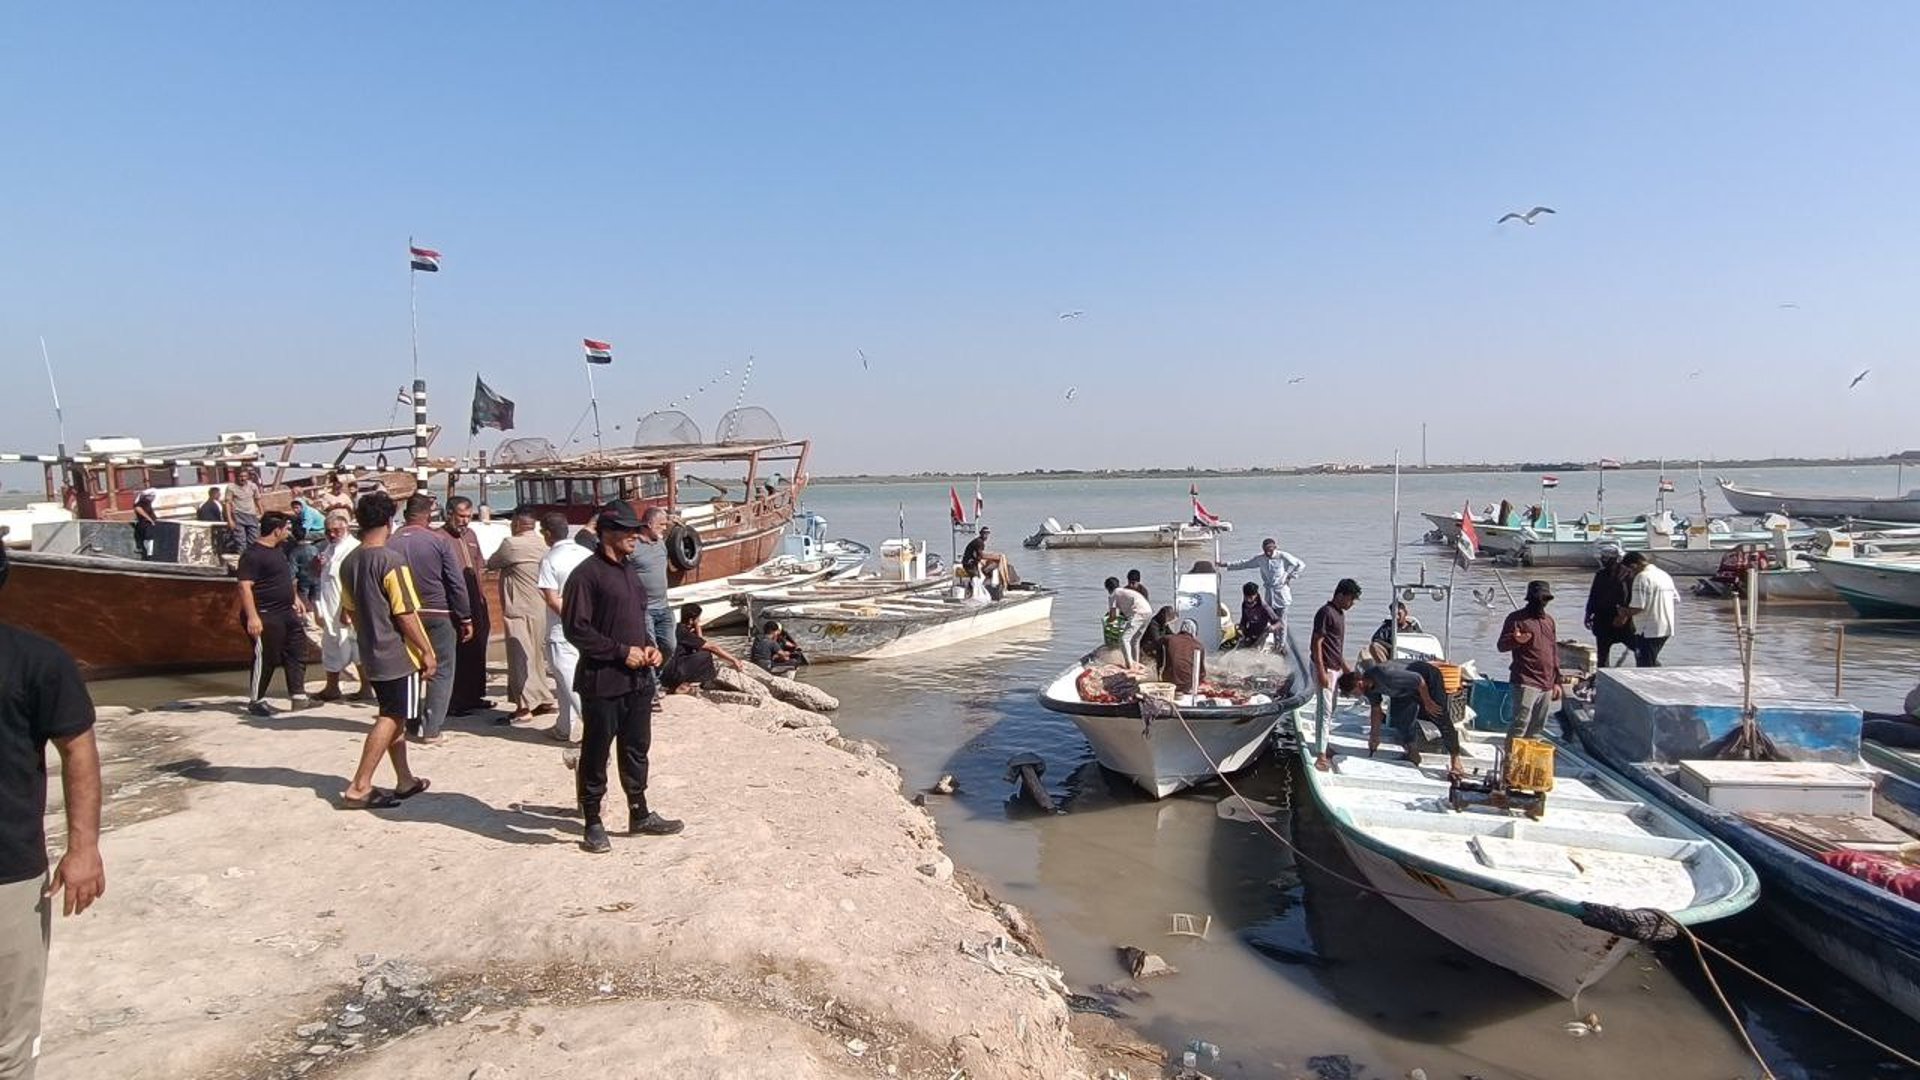 صور من الفاو: قائمة بأصناف وأسعار السمك في مرسى النقعة صباح اليوم السبت